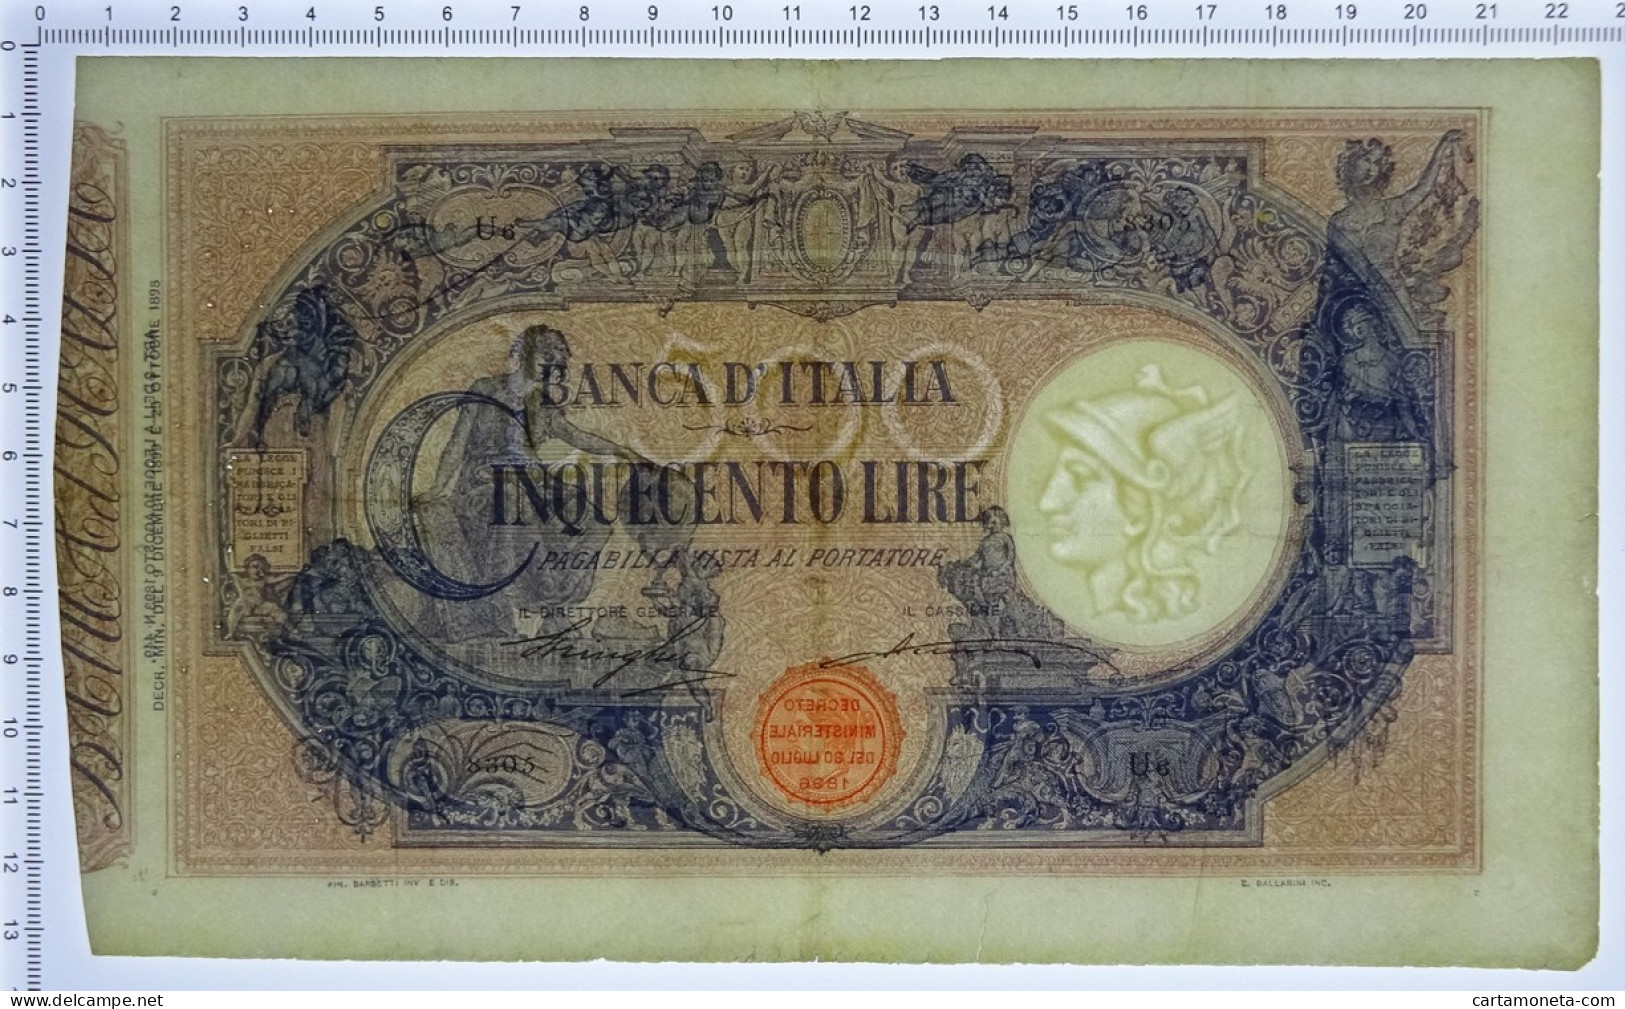 500 LIRE BARBETTI GRANDE C MATRICE LATERALE REGNO UMBERTO I 09/12/1899 BB/BB+ - Andere